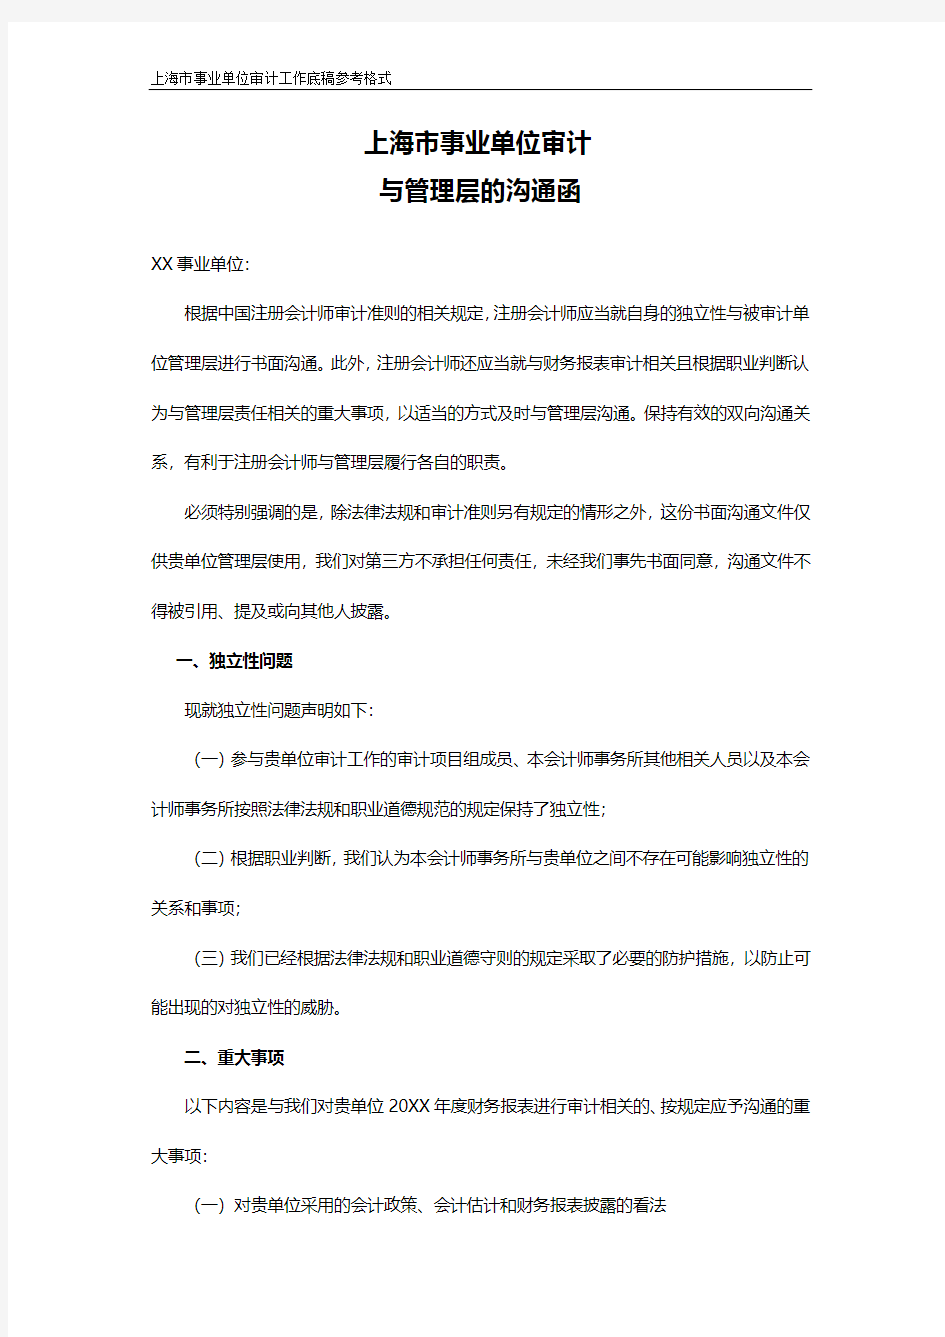 上海市事业单位审计与管理层的沟通函